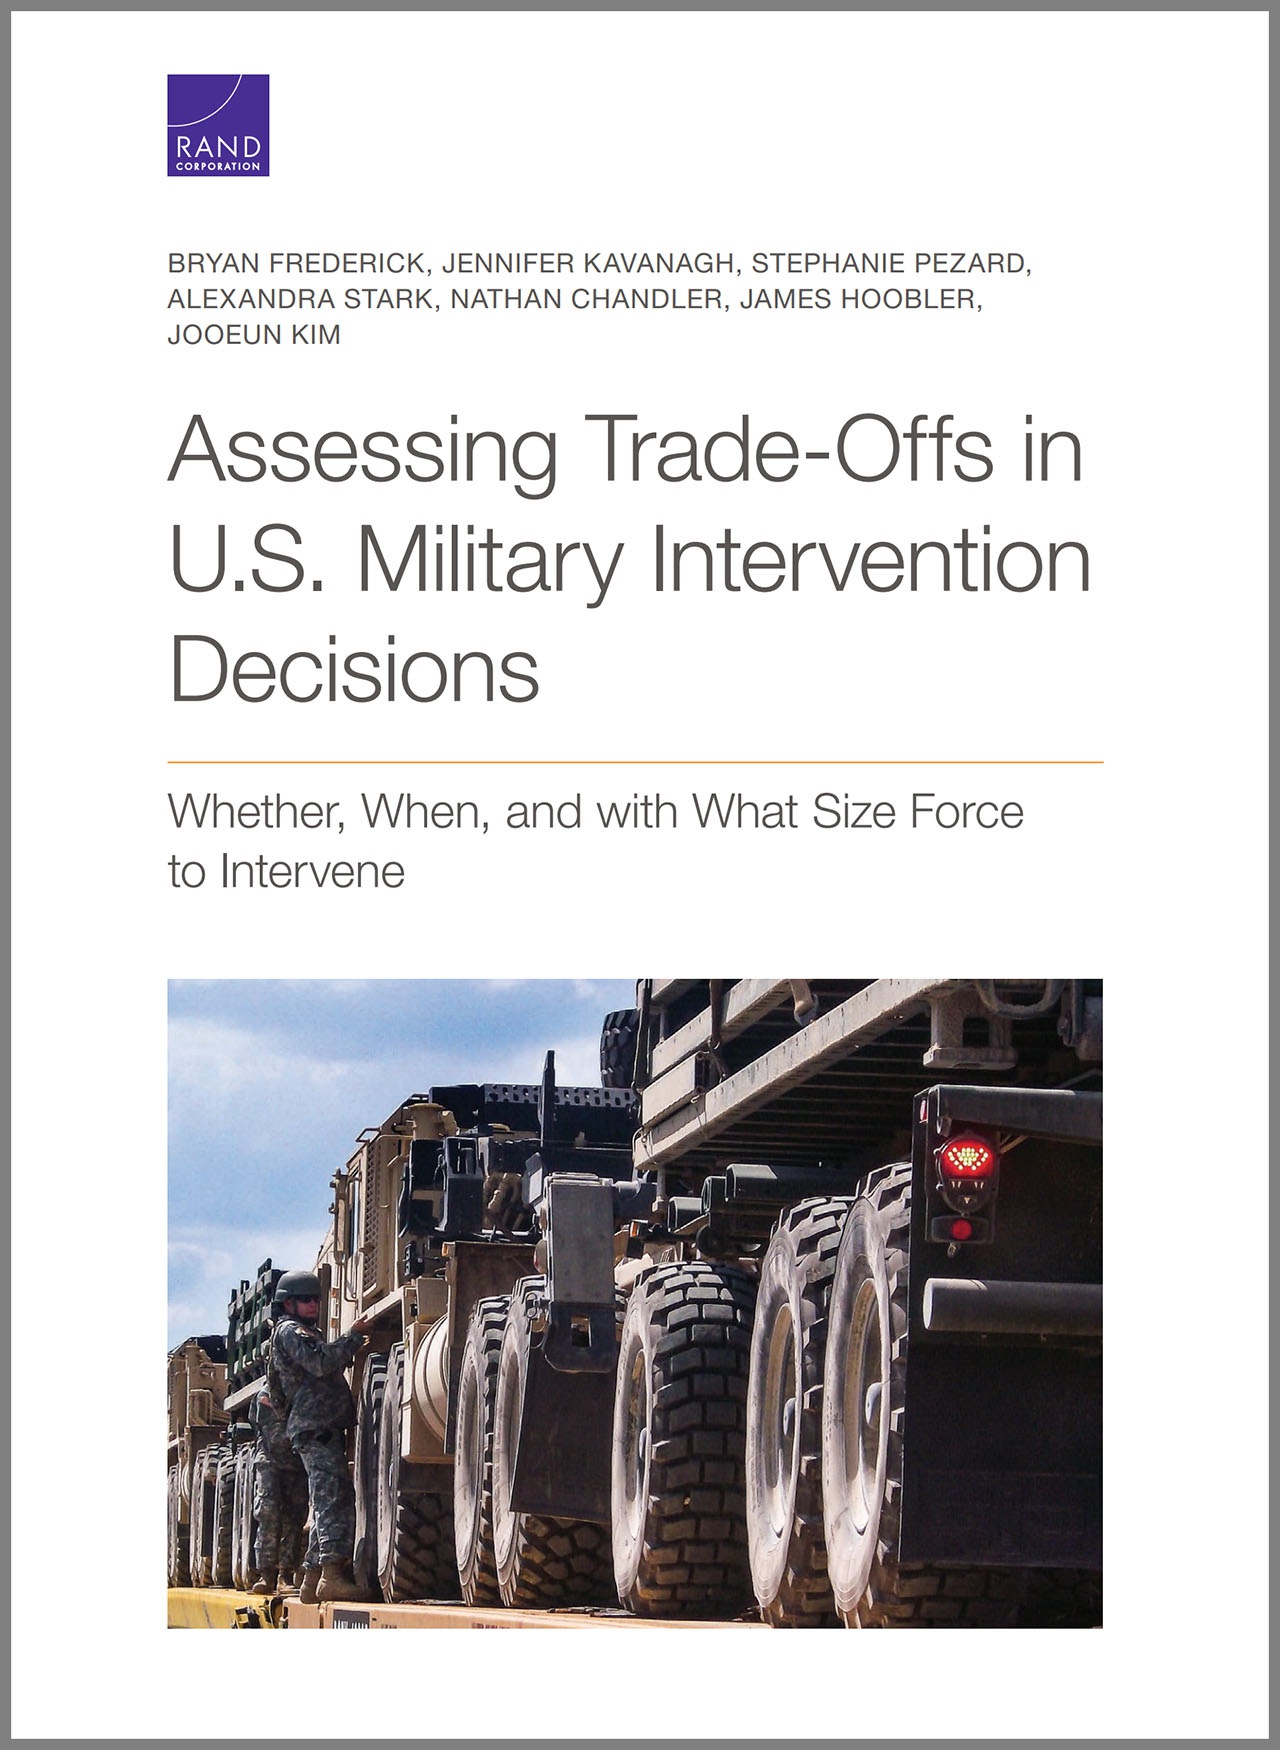 Отчёт Assessing Trade-Offs in U.S. Military Intervention, который подготовлен RAND Corporation.